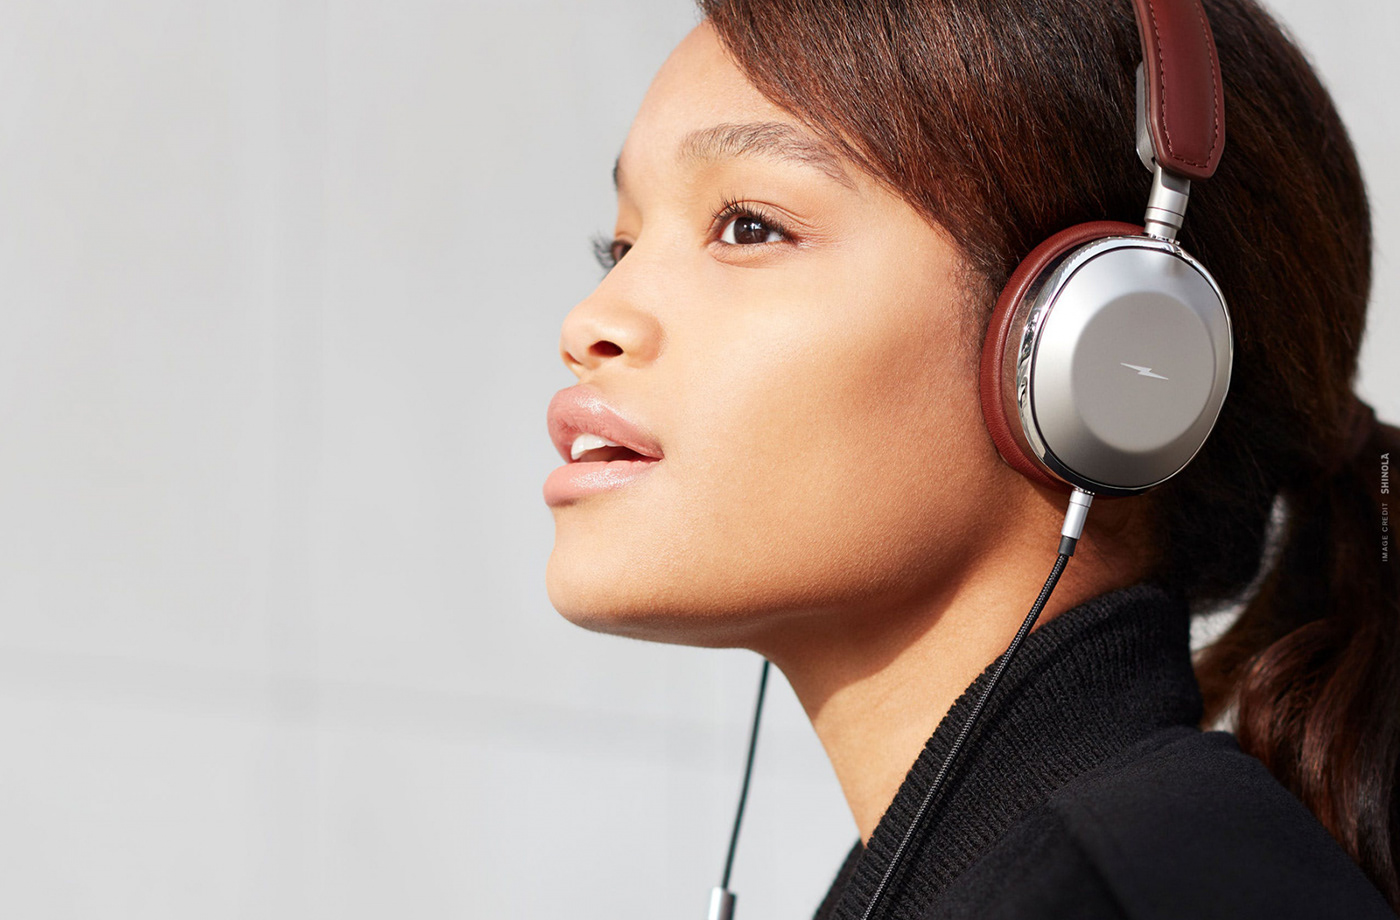 shinola headphones tech industrial design  design leather premium Audio